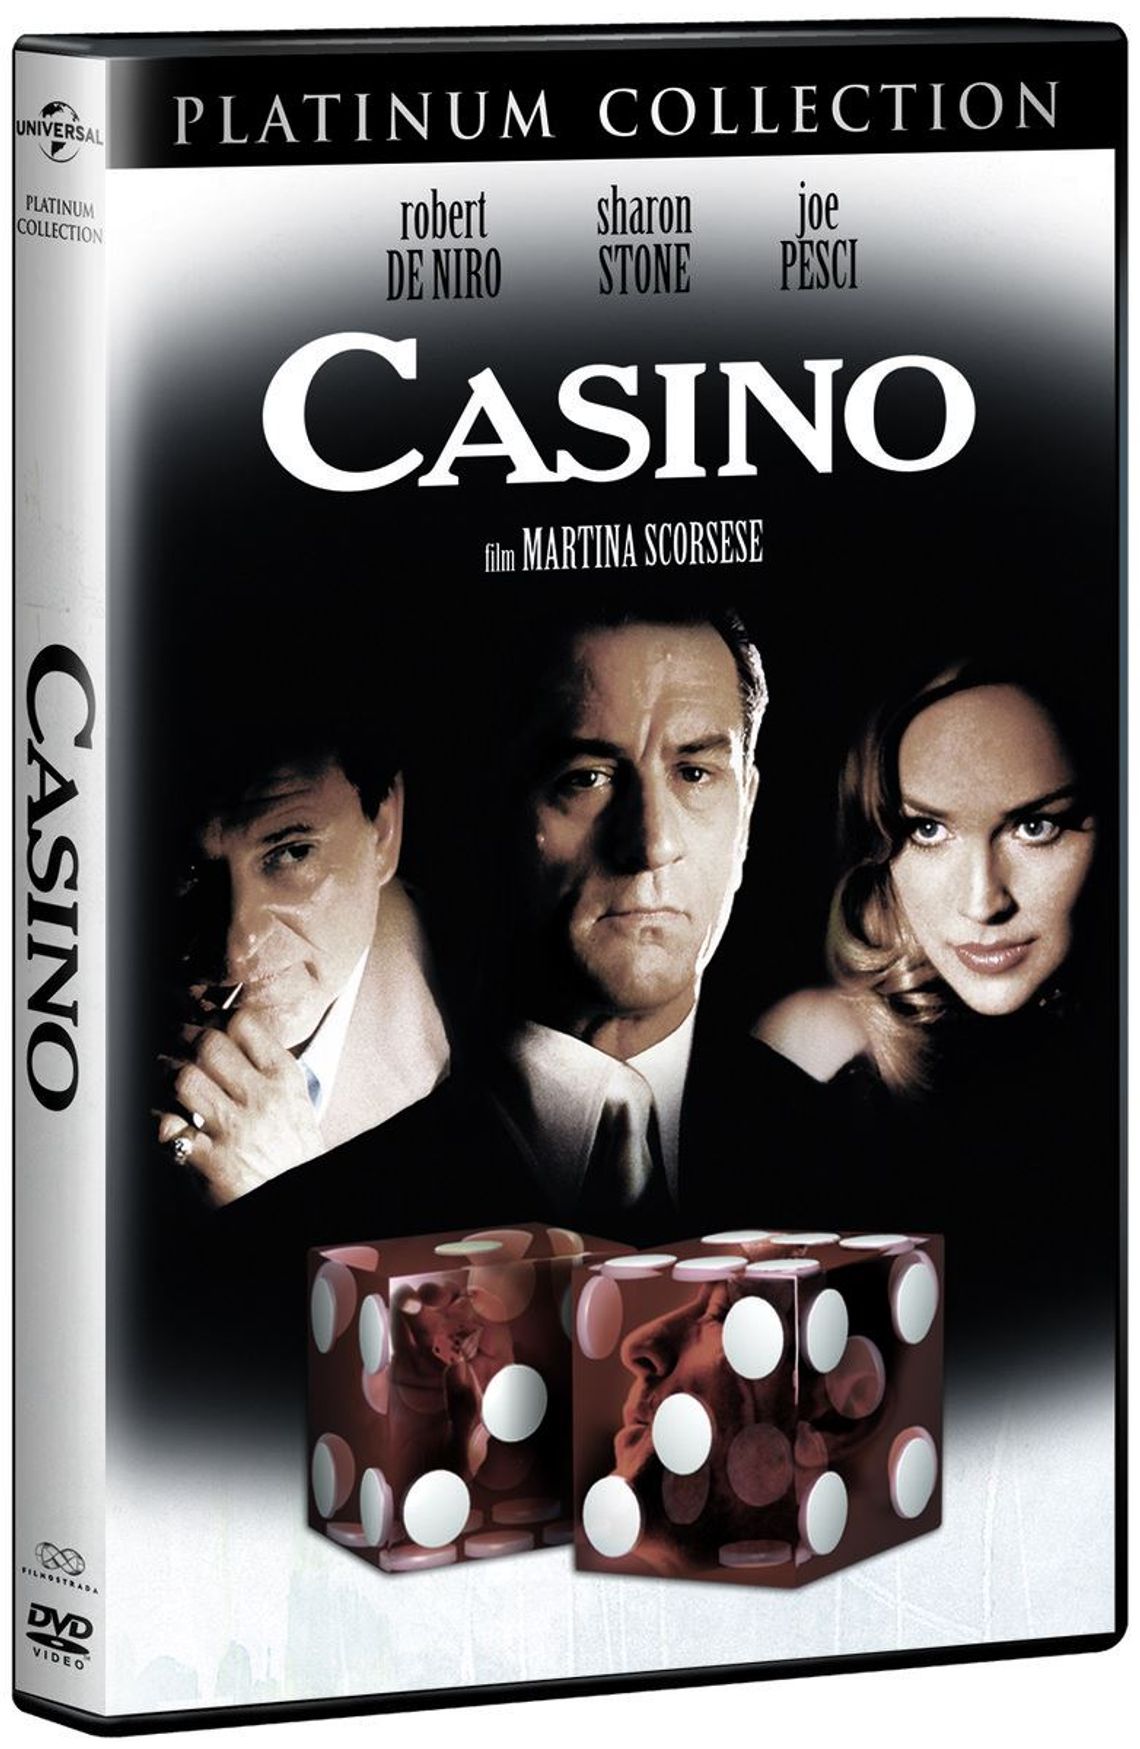 "Casino" Martina Scorsese - obejrzysz w Szkole Łacińskiej!